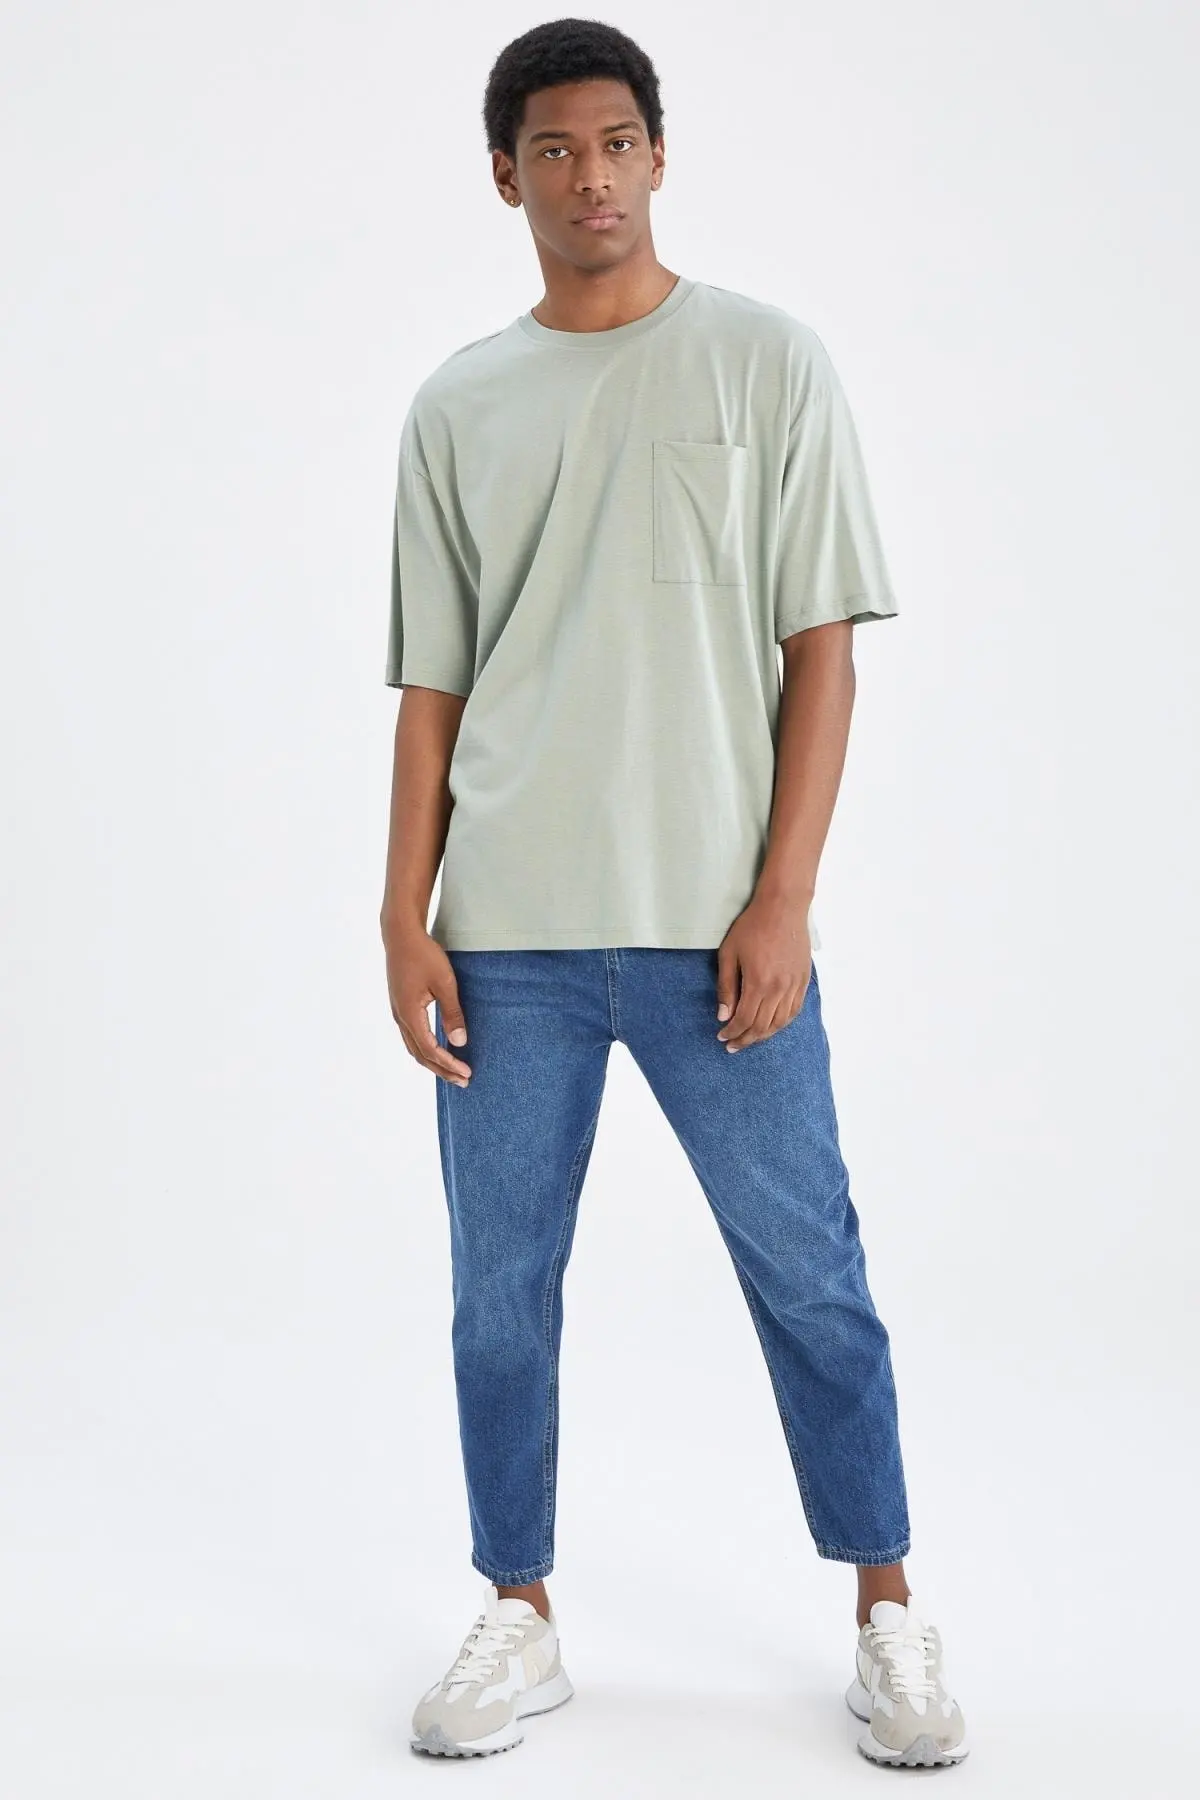 تیشرت اور سایز تک جیب مردانه سبز نعنایی برند Defacto 